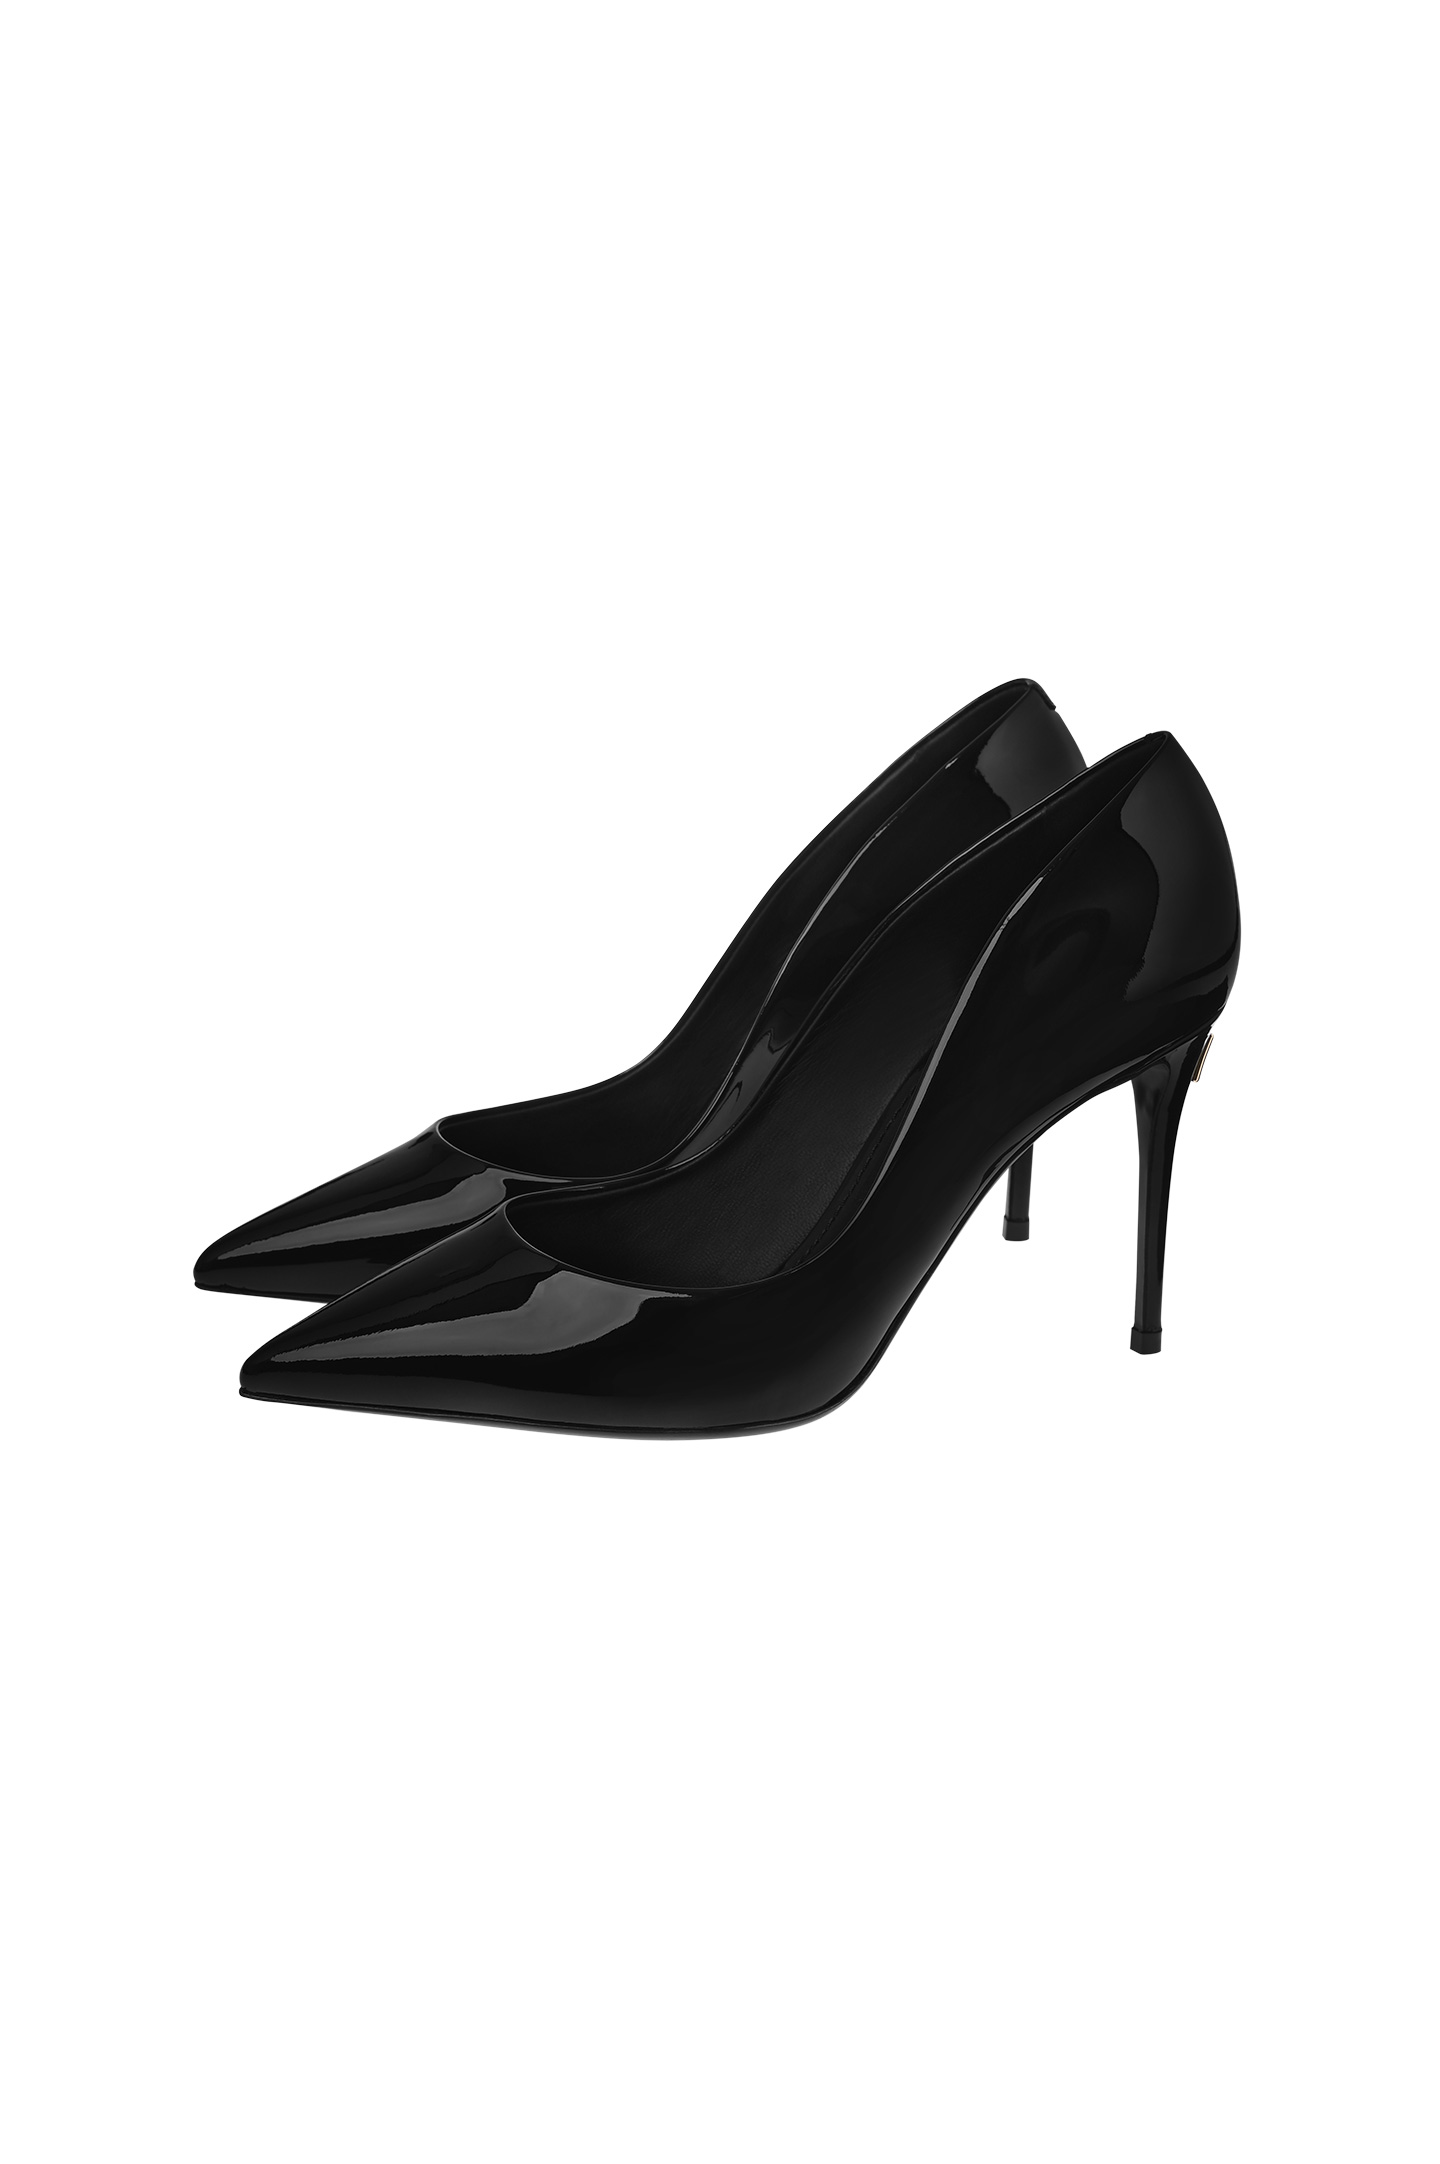 Туфли DOLCE & GABBANA CD1657 A1471, цвет: Черный, Женский